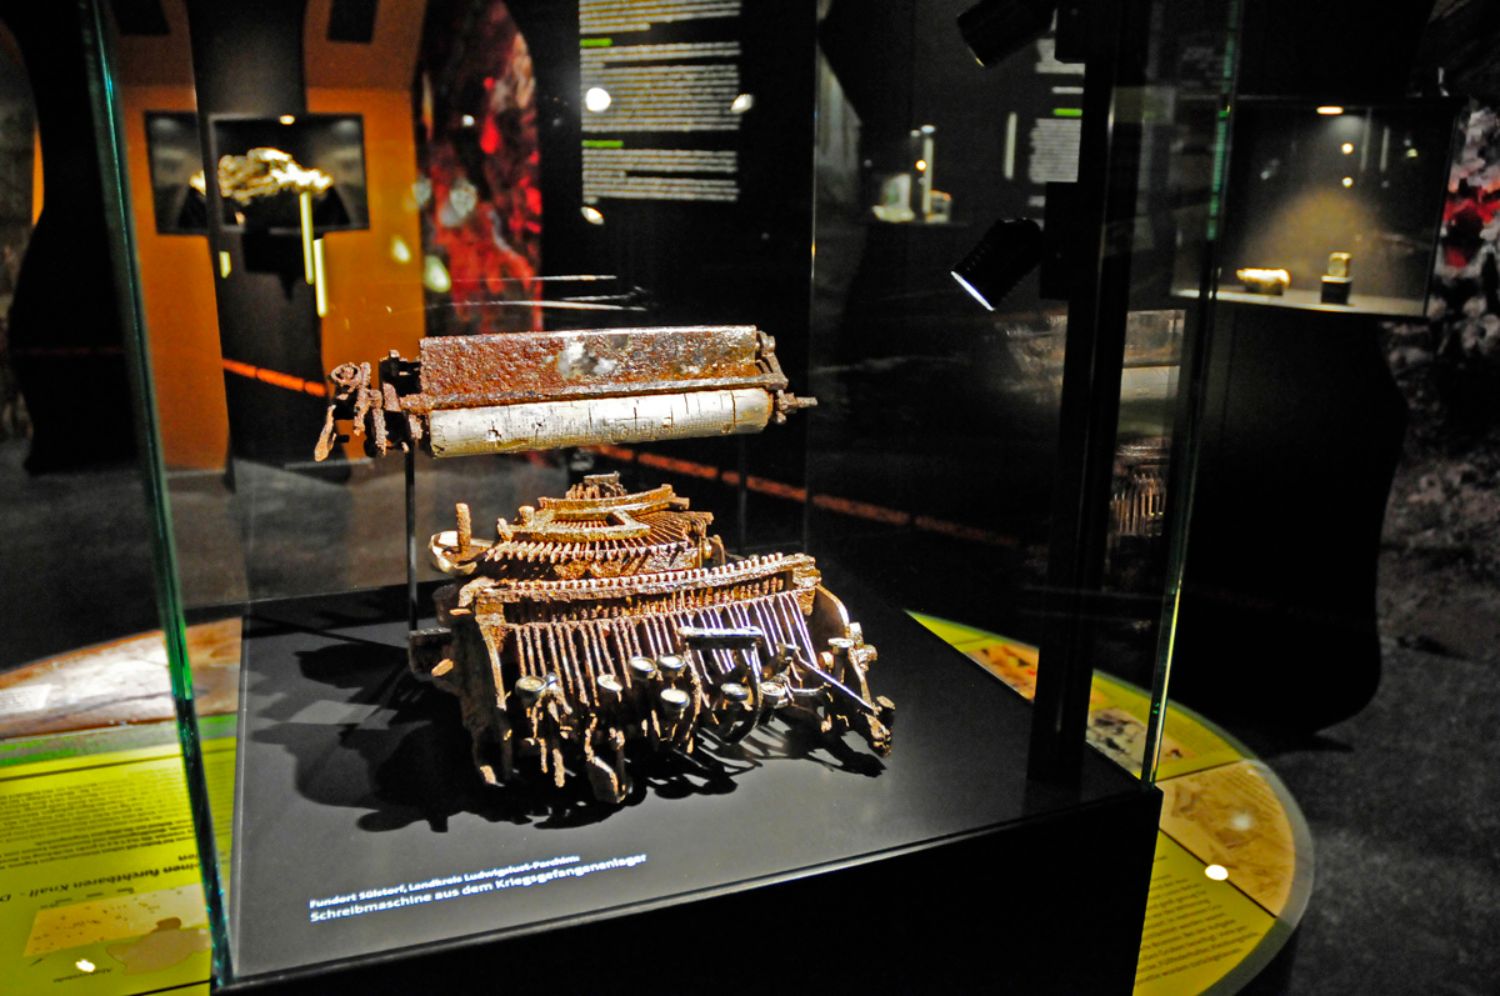 Foto aus der Sonderausstellung "PIPELINE:ARCHÄOLOGIE": In einer Vitrine steht eine verrostete Schreibmaschine. Im Hintergrund sind Ausstellungstafeln, Vitrinen und andere Ausstellungsstücke zu sehen. (© LAKD M-V/LA)